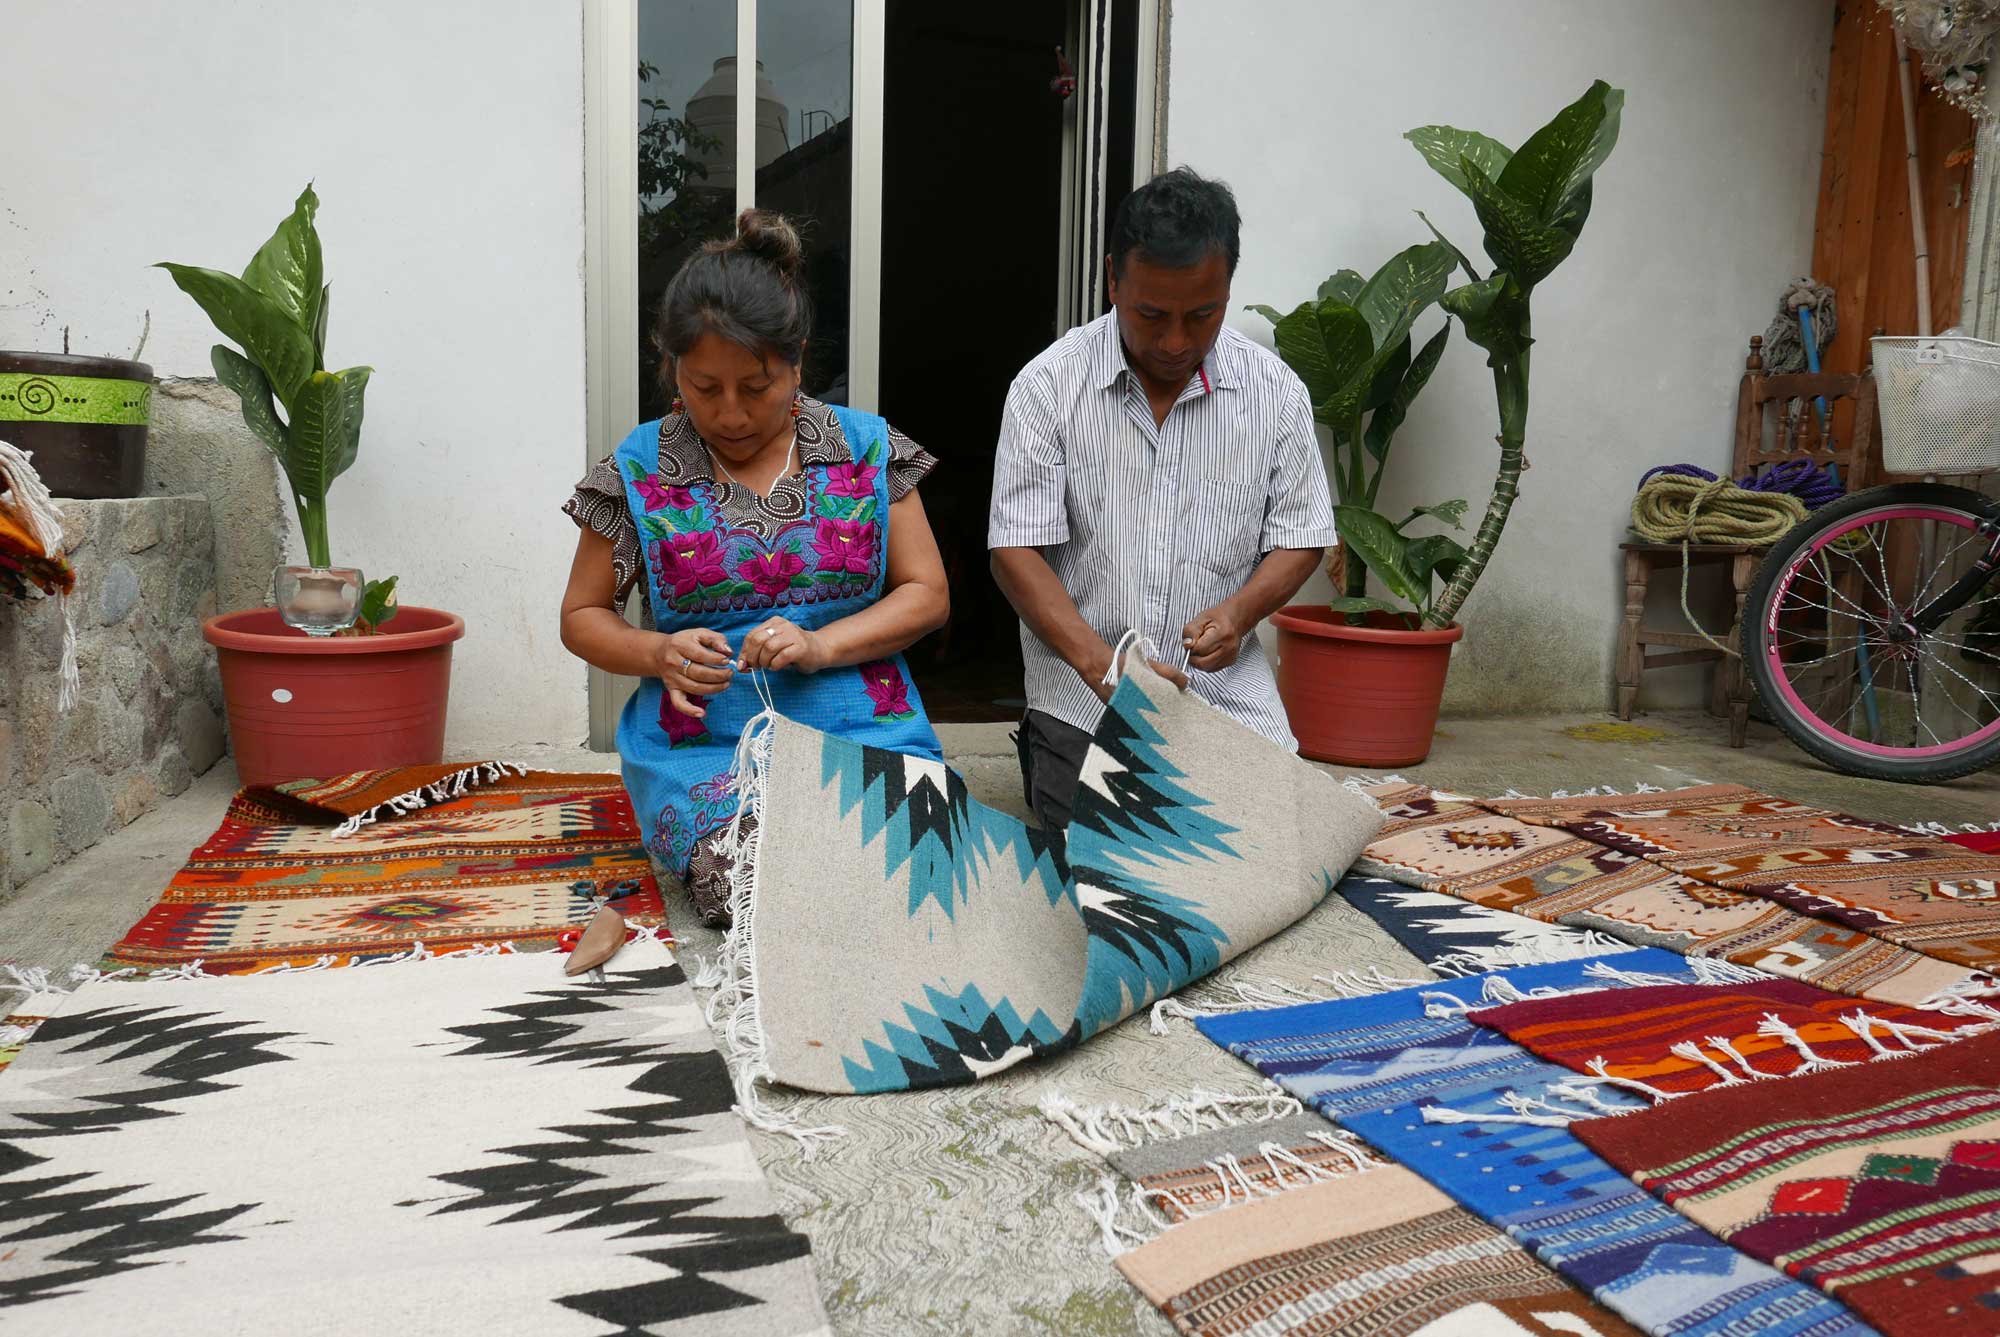 Artisan Weaving Mexican Zapotec Rugs in Teotitlan de Valle Mexico